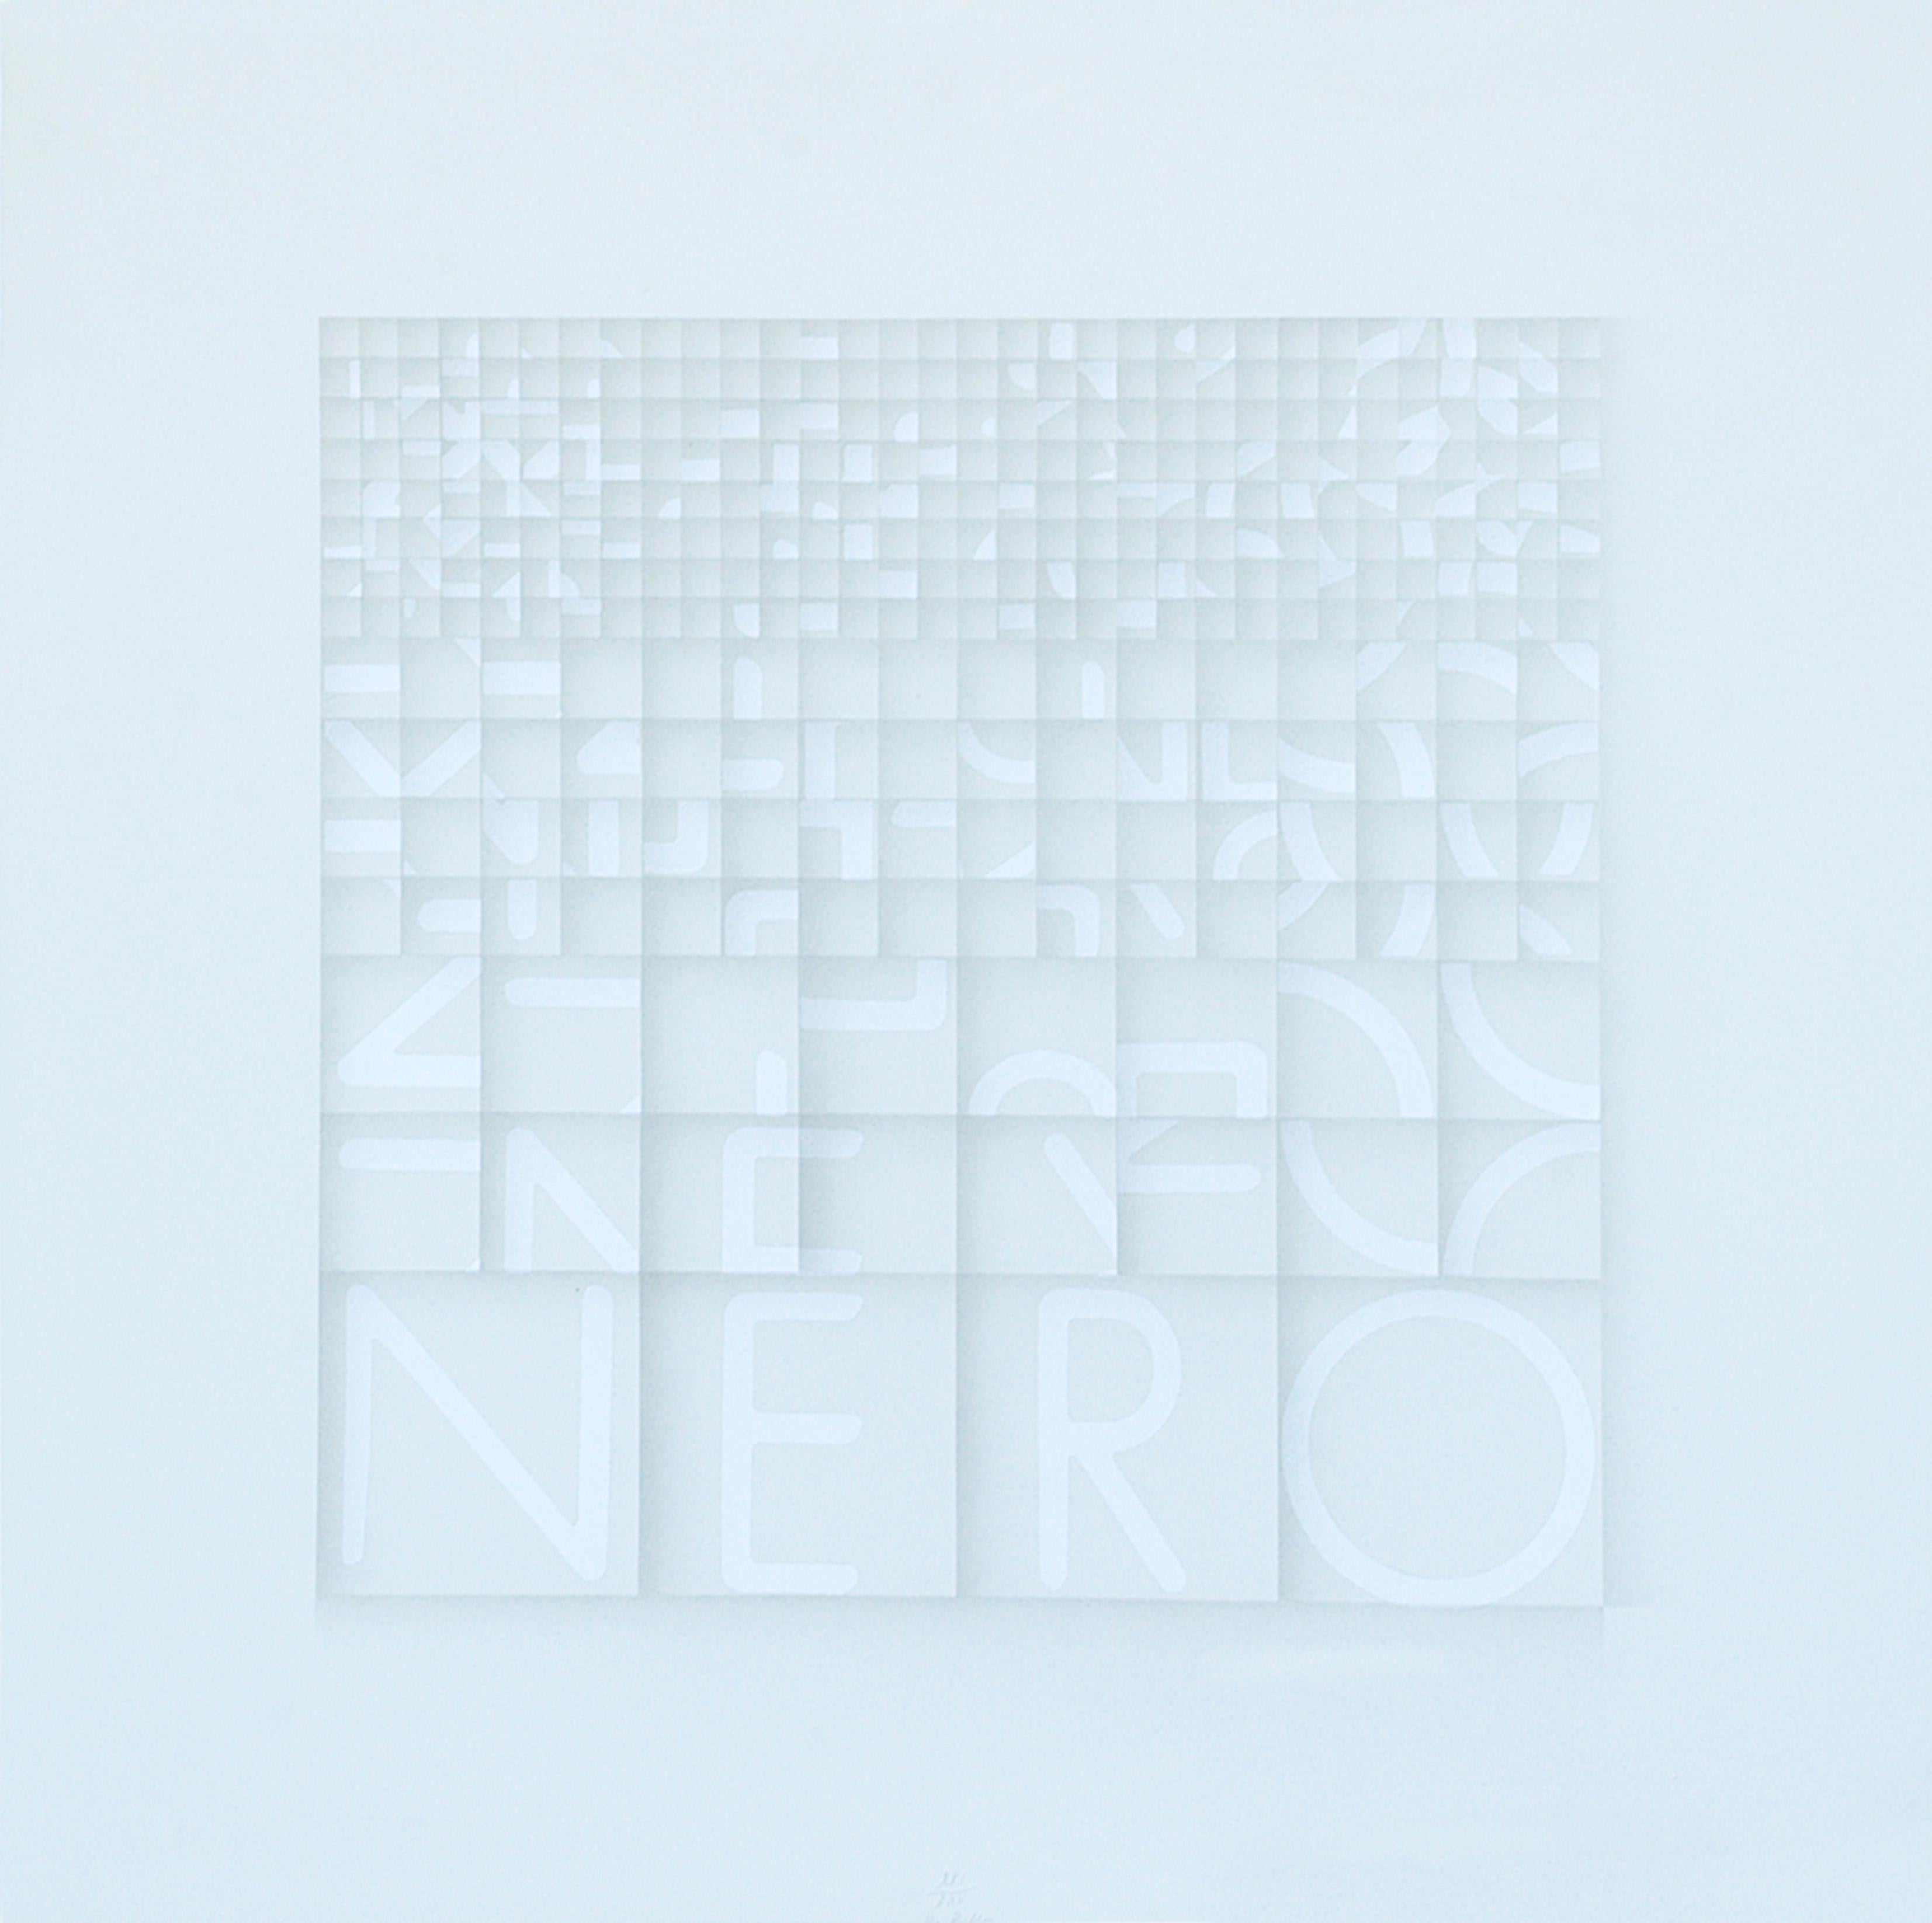 Bruno Di Bello Abstract Print - Nero (Black) - Screen Print by Bruno di Bello - 1980 ca.